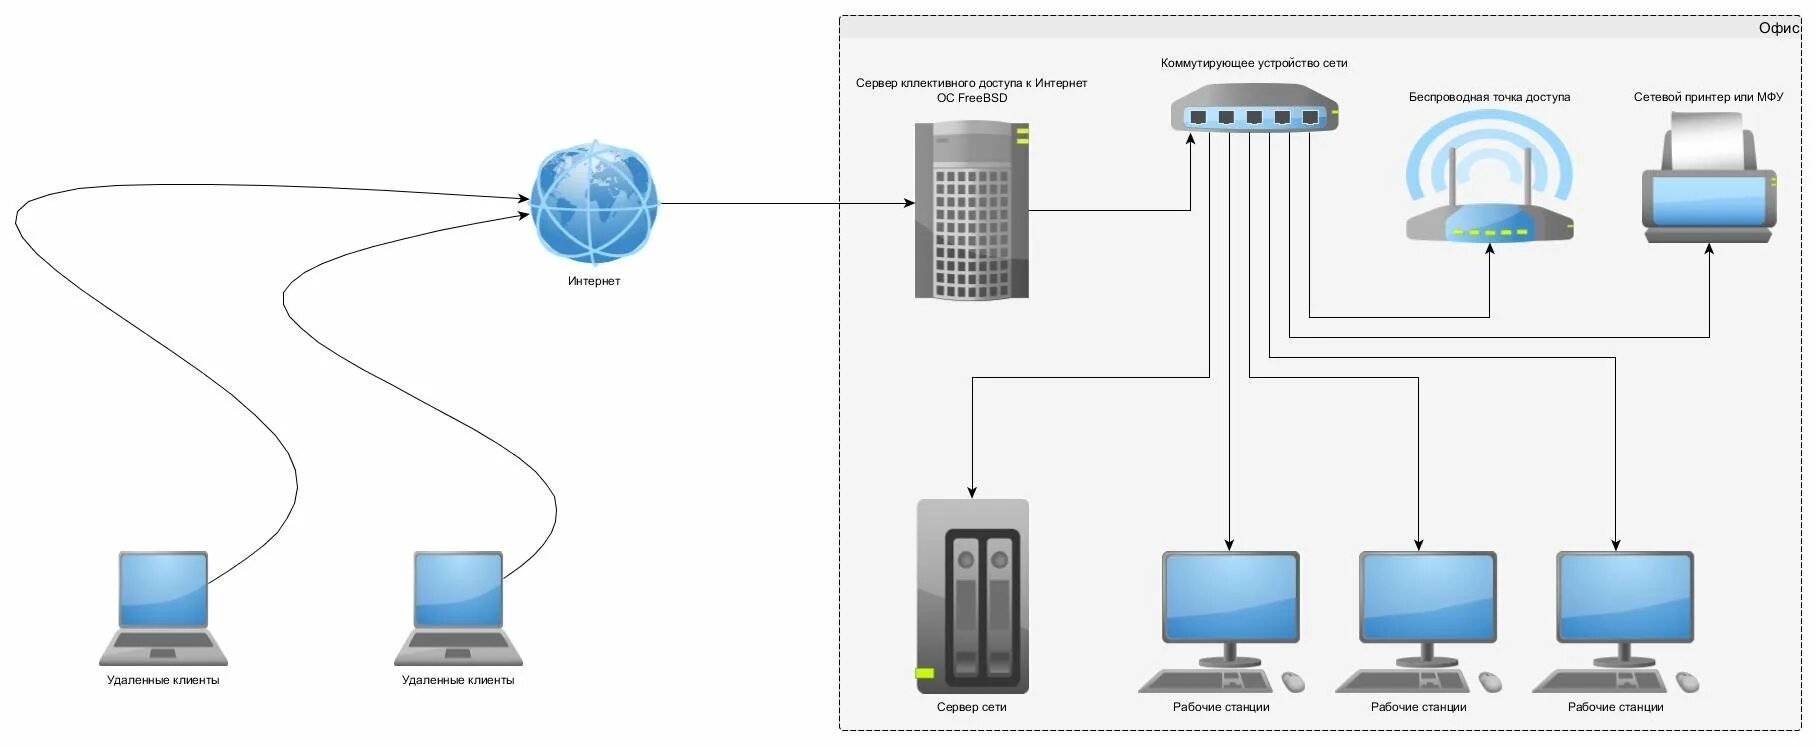 Схема подключения компьютеров к серверу. Сервер удаленного доступа схема подключения к сети. Ethernet концентратор схема. Схема подключения сервера к локальной сети.